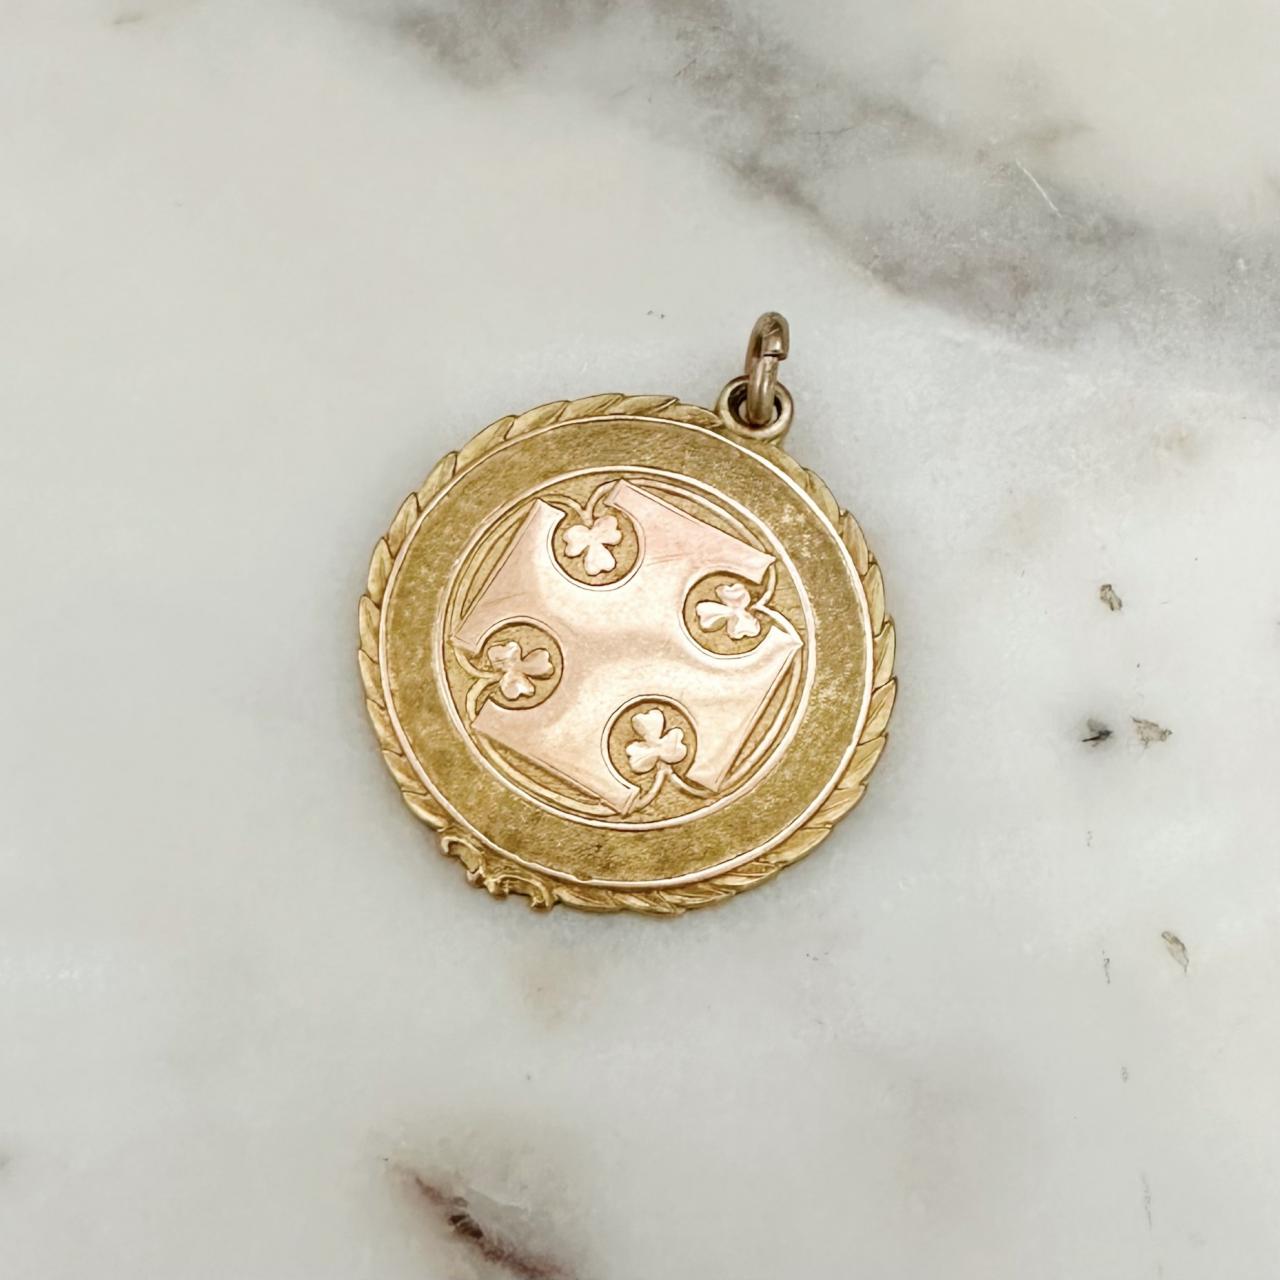 Antique Irish medalion